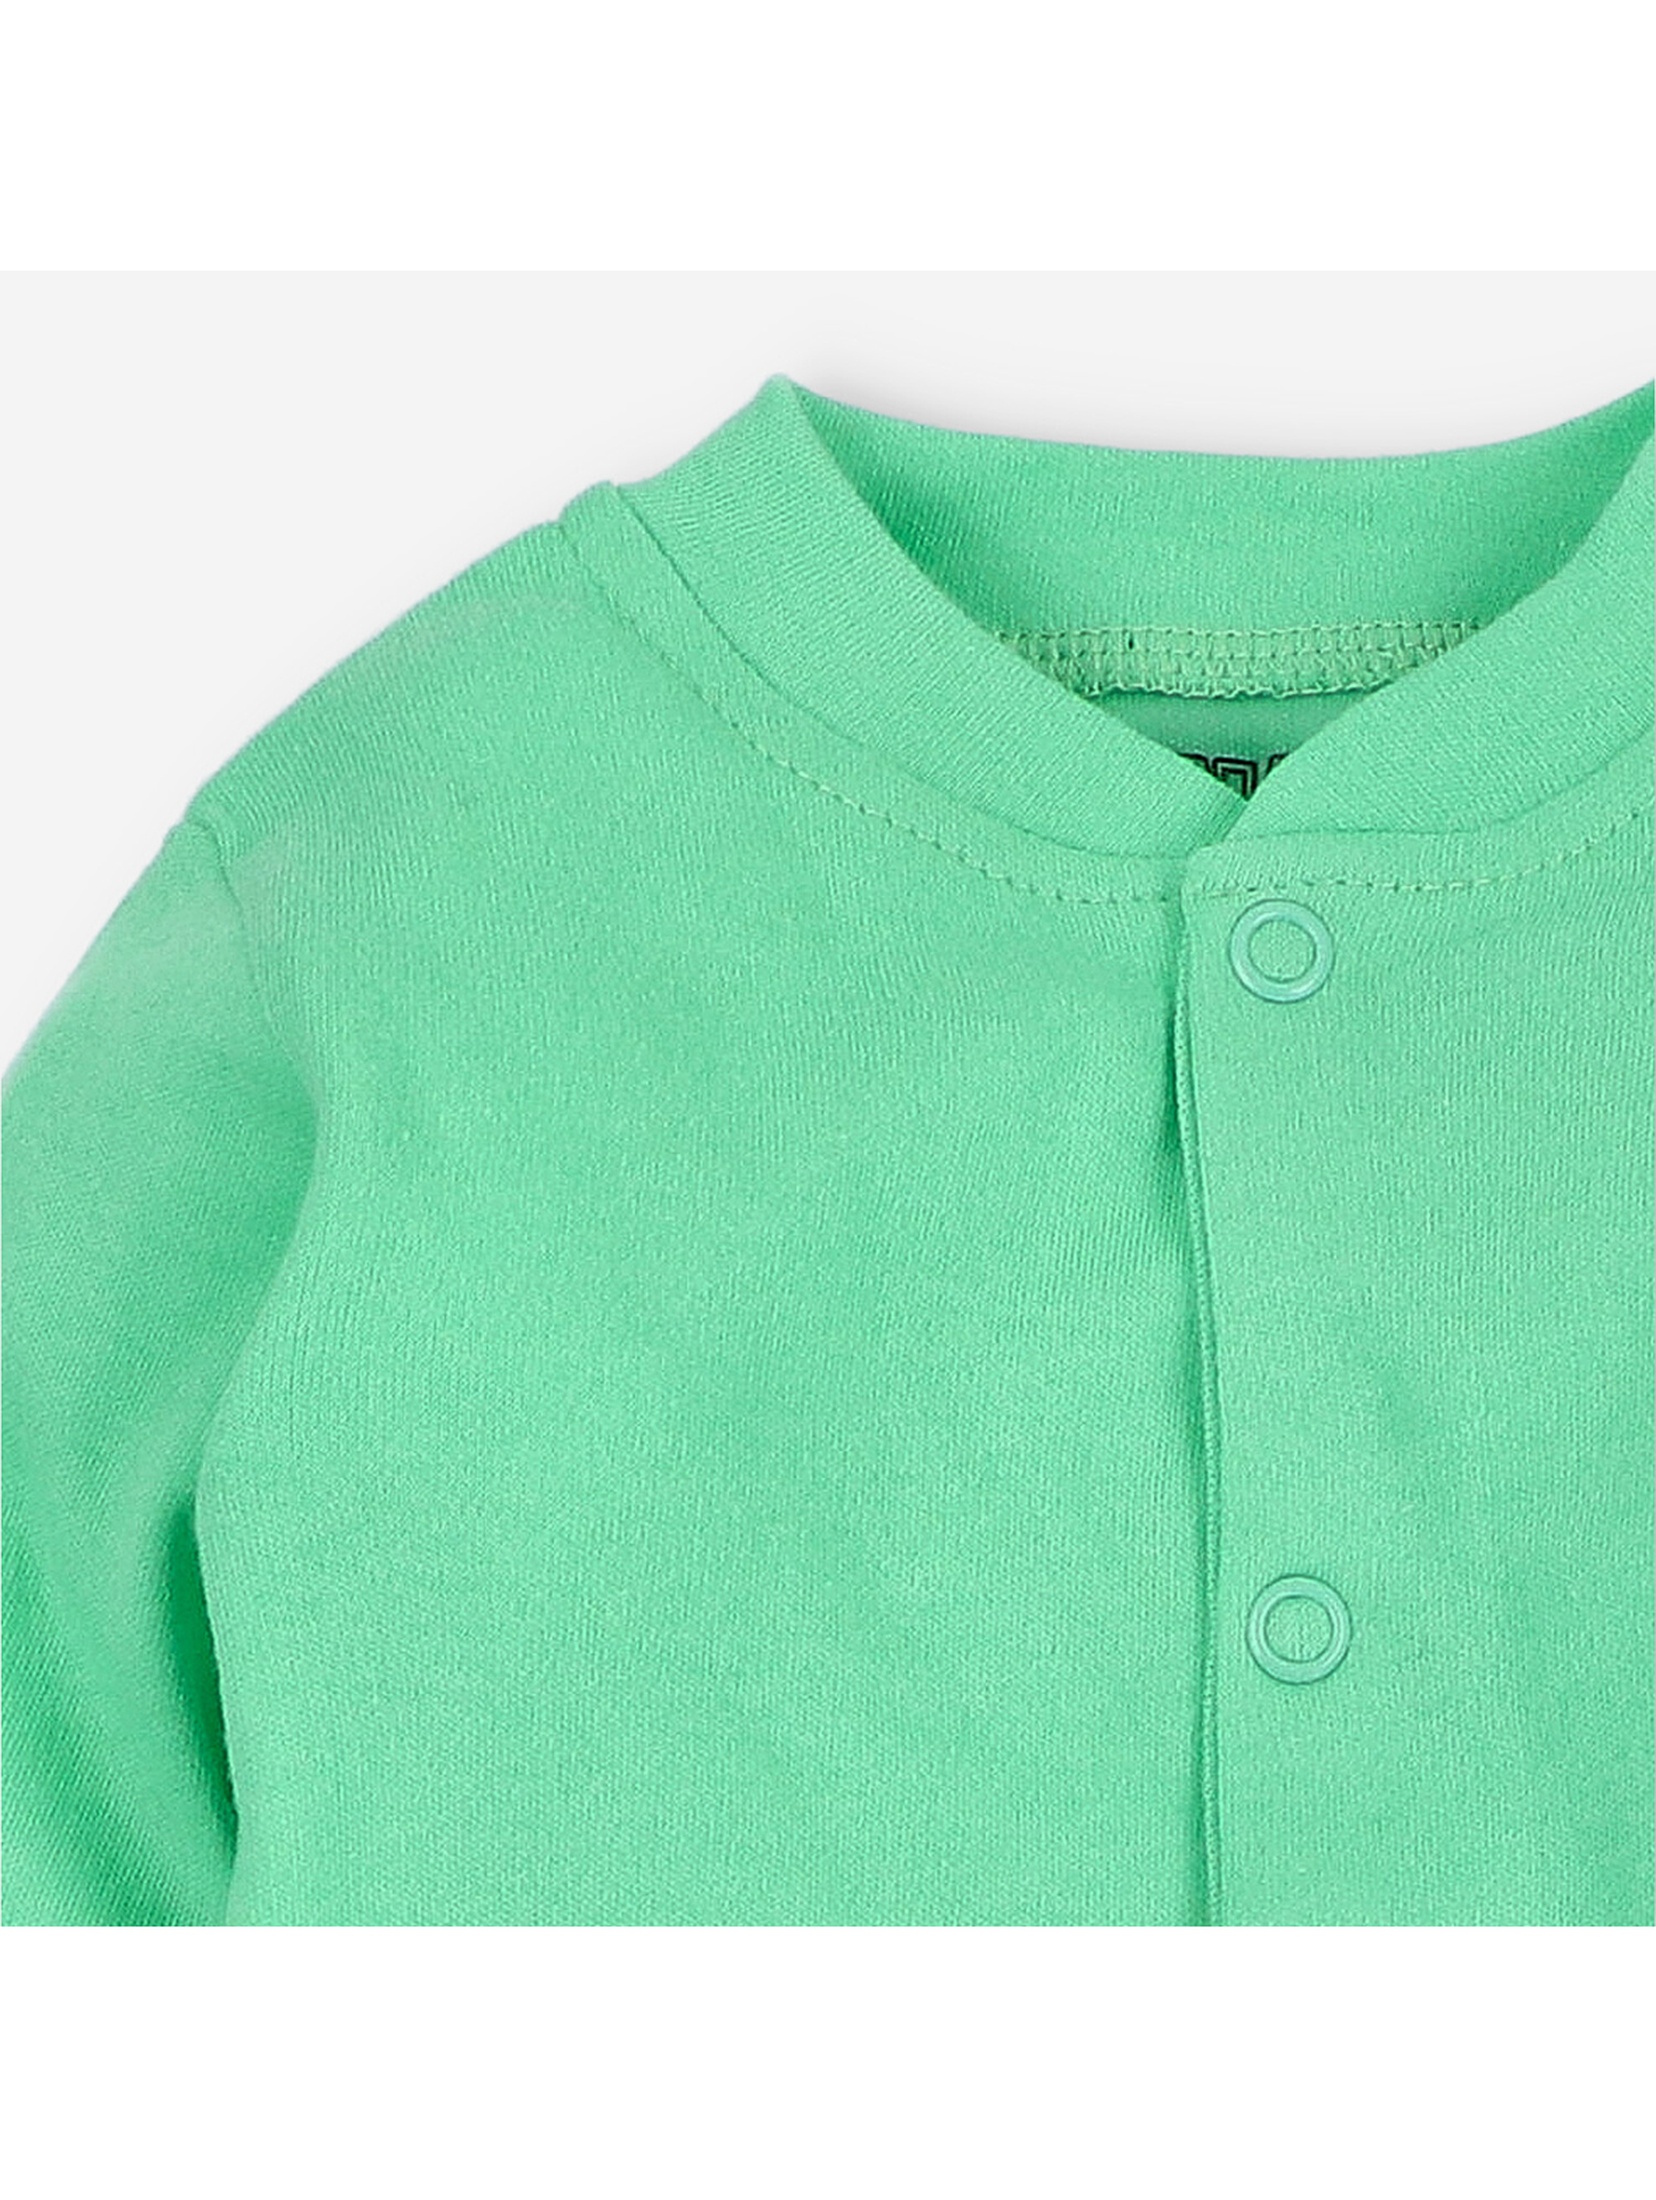 Pajac niemowlęcy z bawełny organicznej kolor zielony